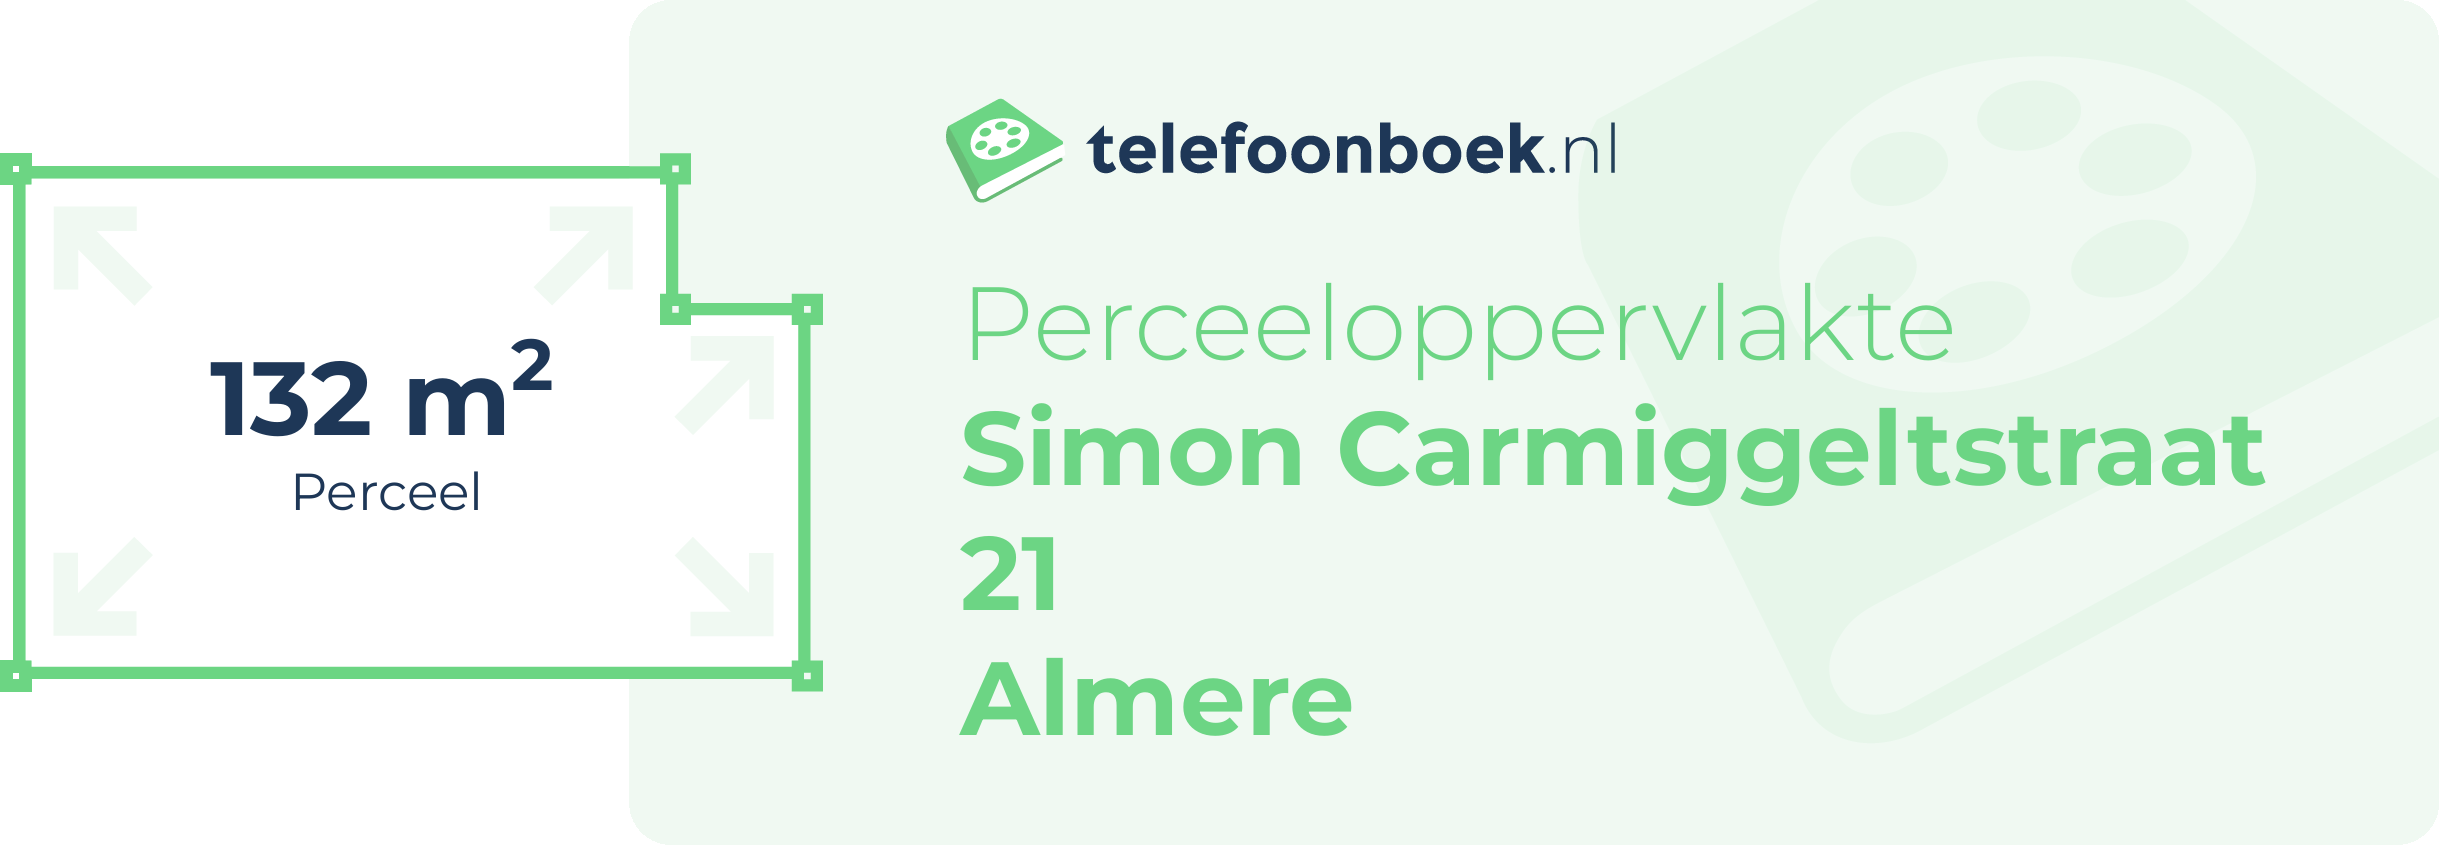 Perceeloppervlakte Simon Carmiggeltstraat 21 Almere